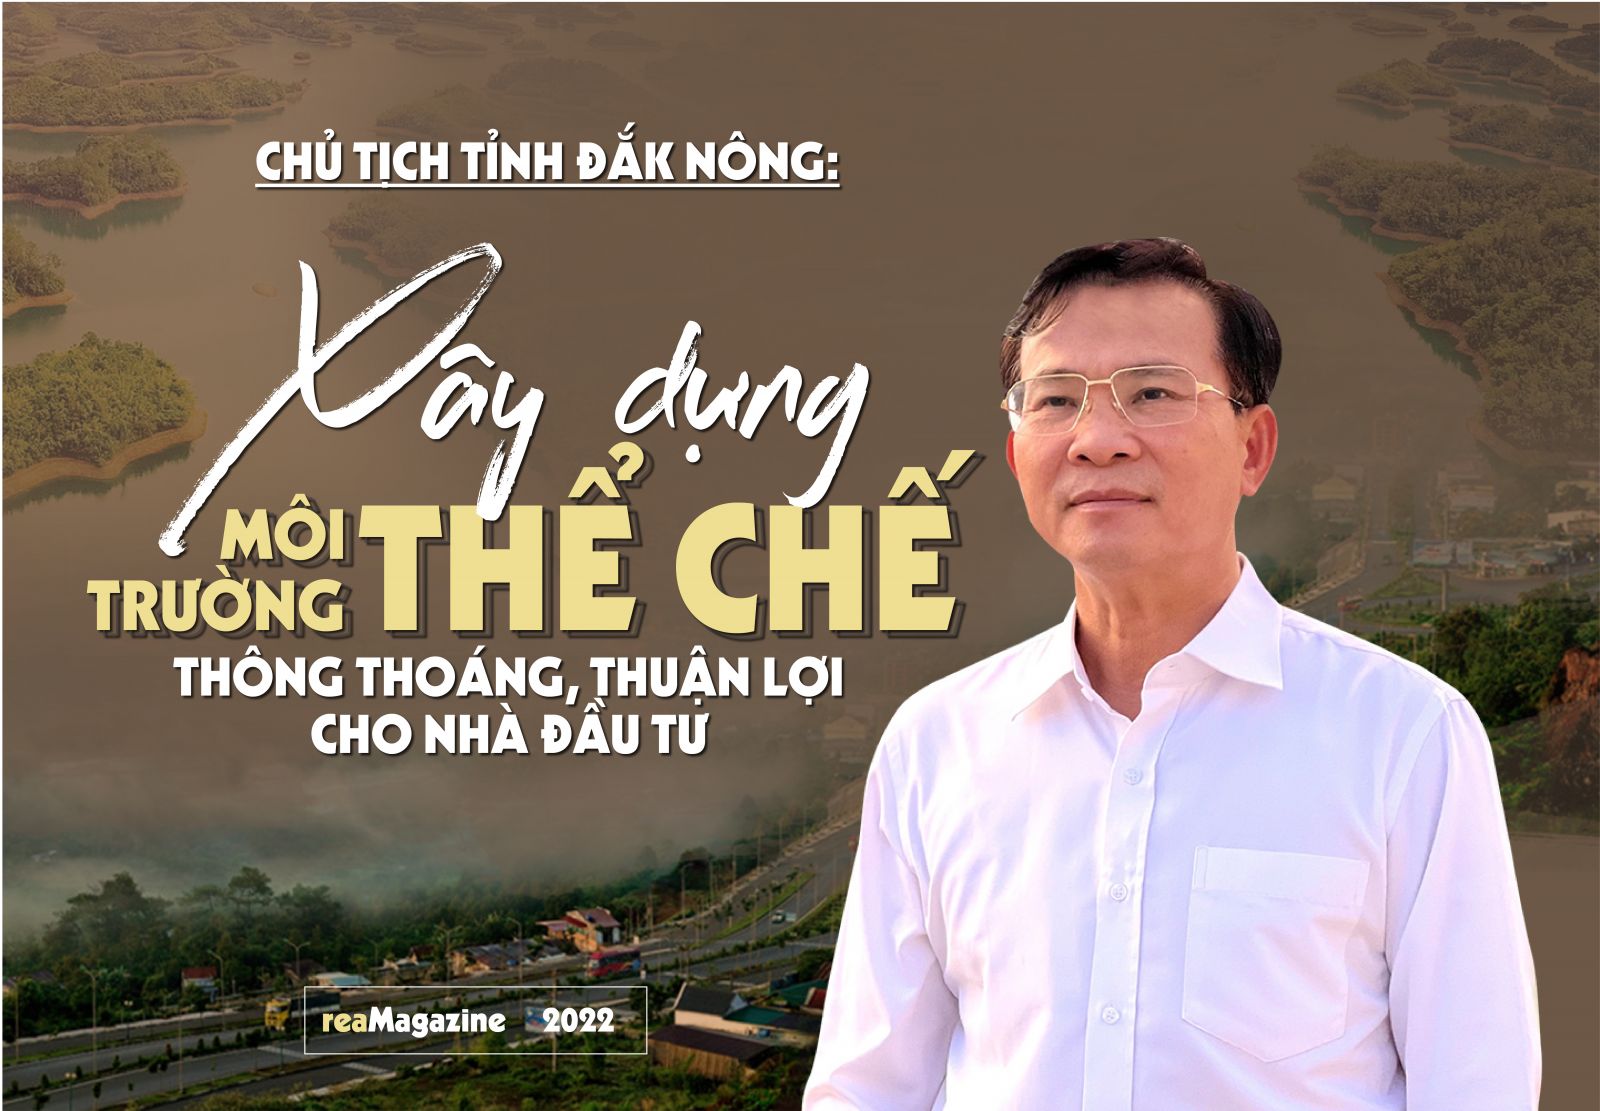 Chủ tịch tỉnh Đắk Nông: Xây dựng môi trường thể chế thông thoáng, thuận lợi cho nhà đầu tư